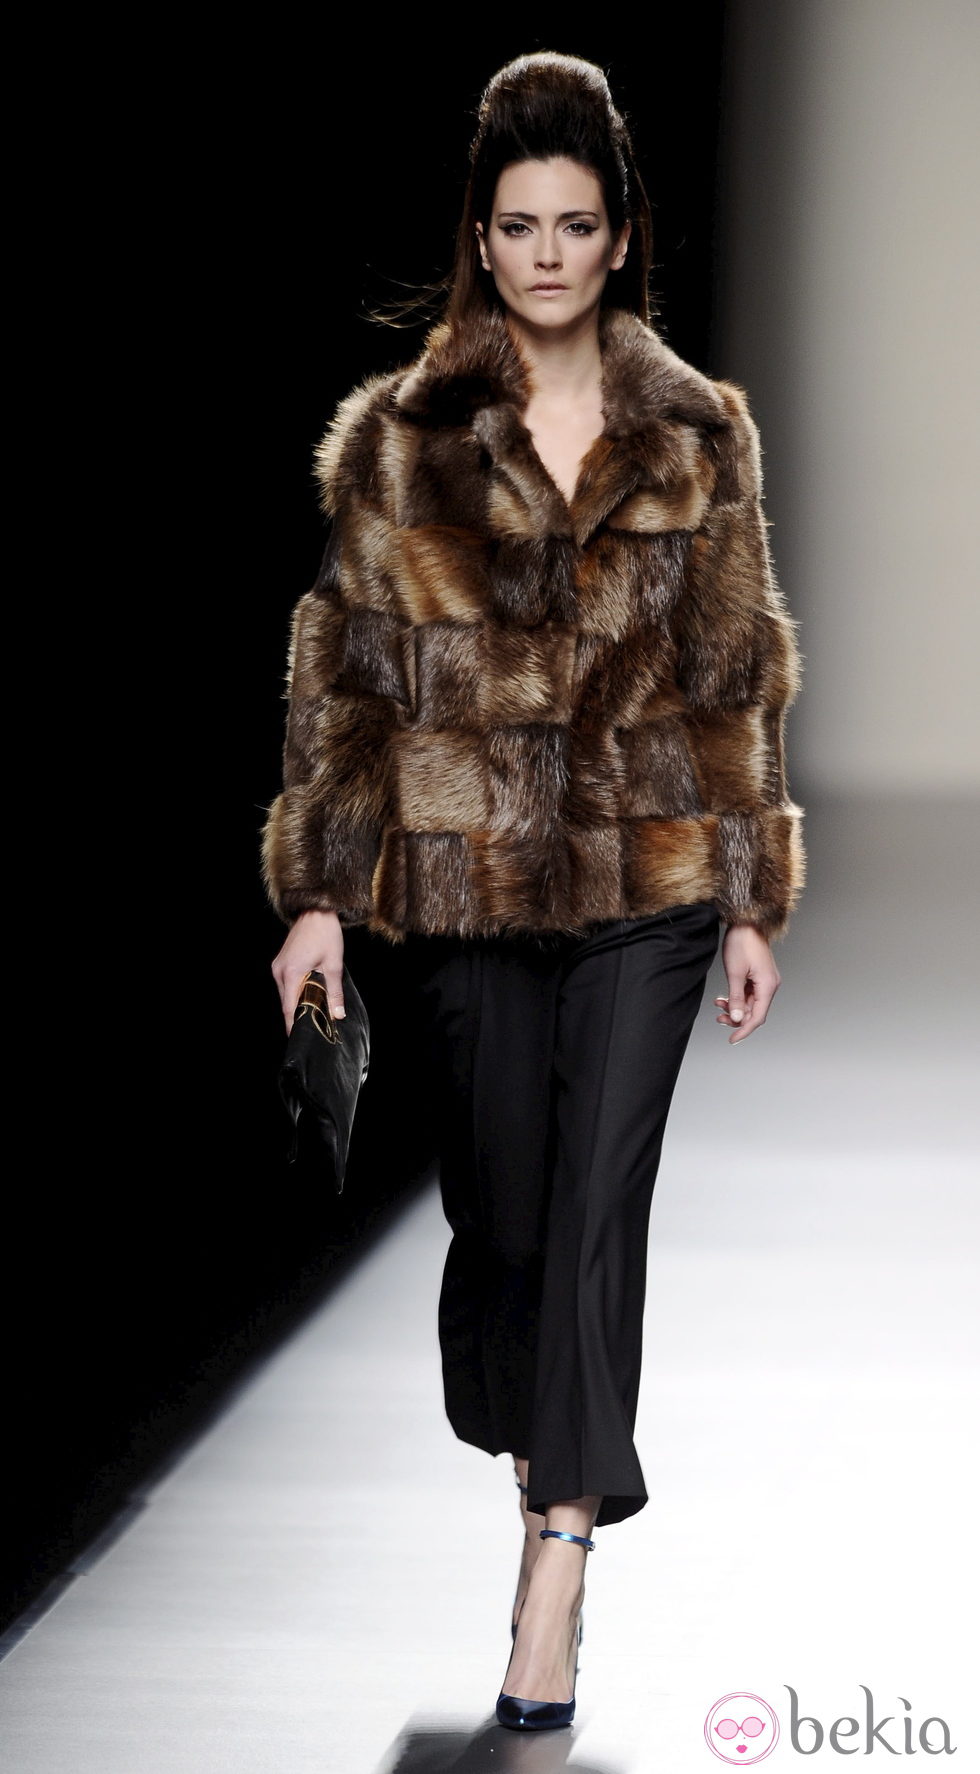 Abrigo de piel de la colección otoño/invierno 2013/2014 de Miguel Palacio en Madrid Fashion week